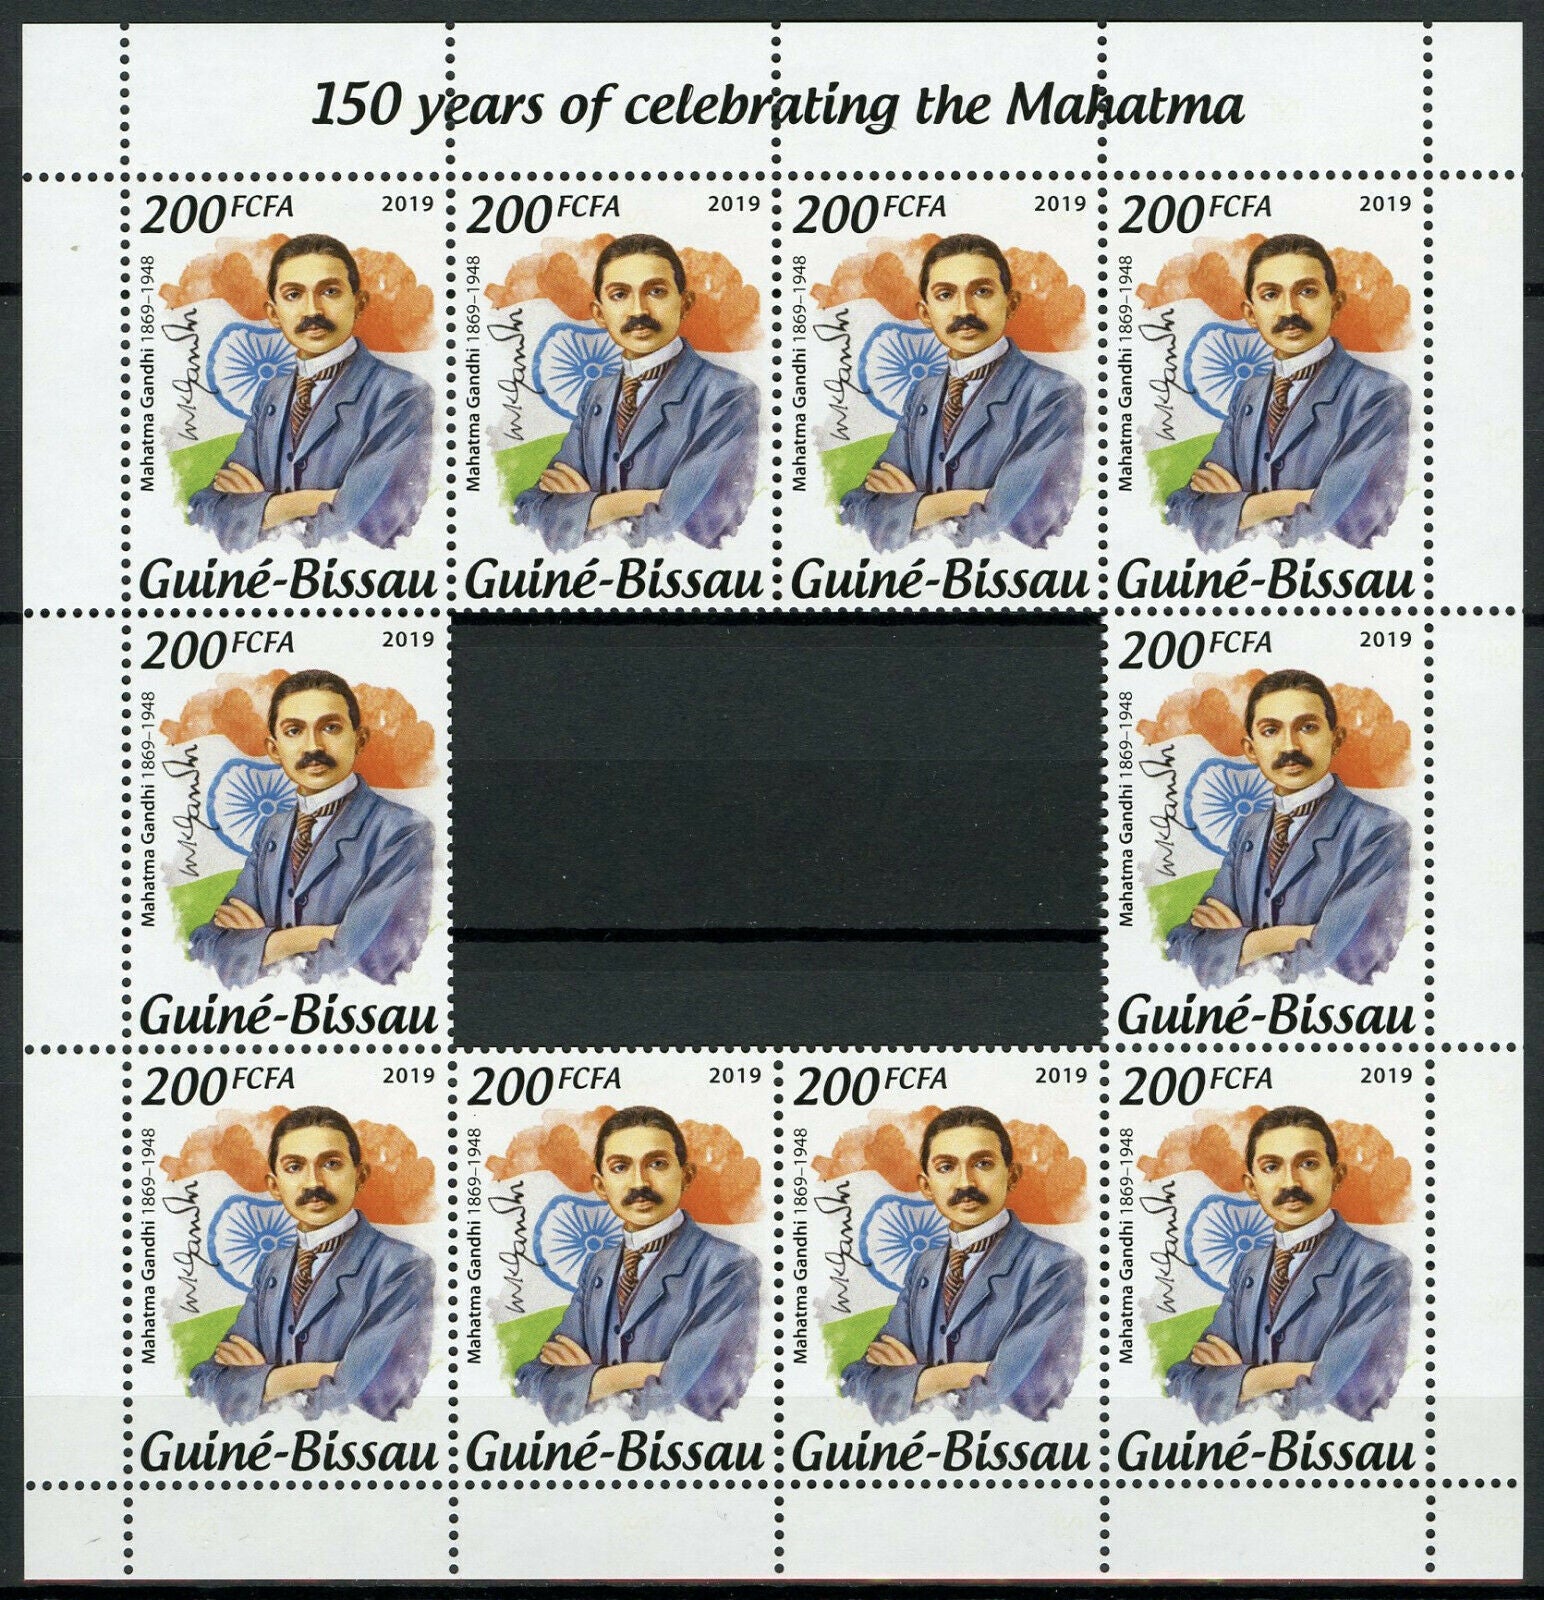 Guinea-Bissau Mahatma Gandhi Stamps 2019 MNH People Historical Figures 10v M/S